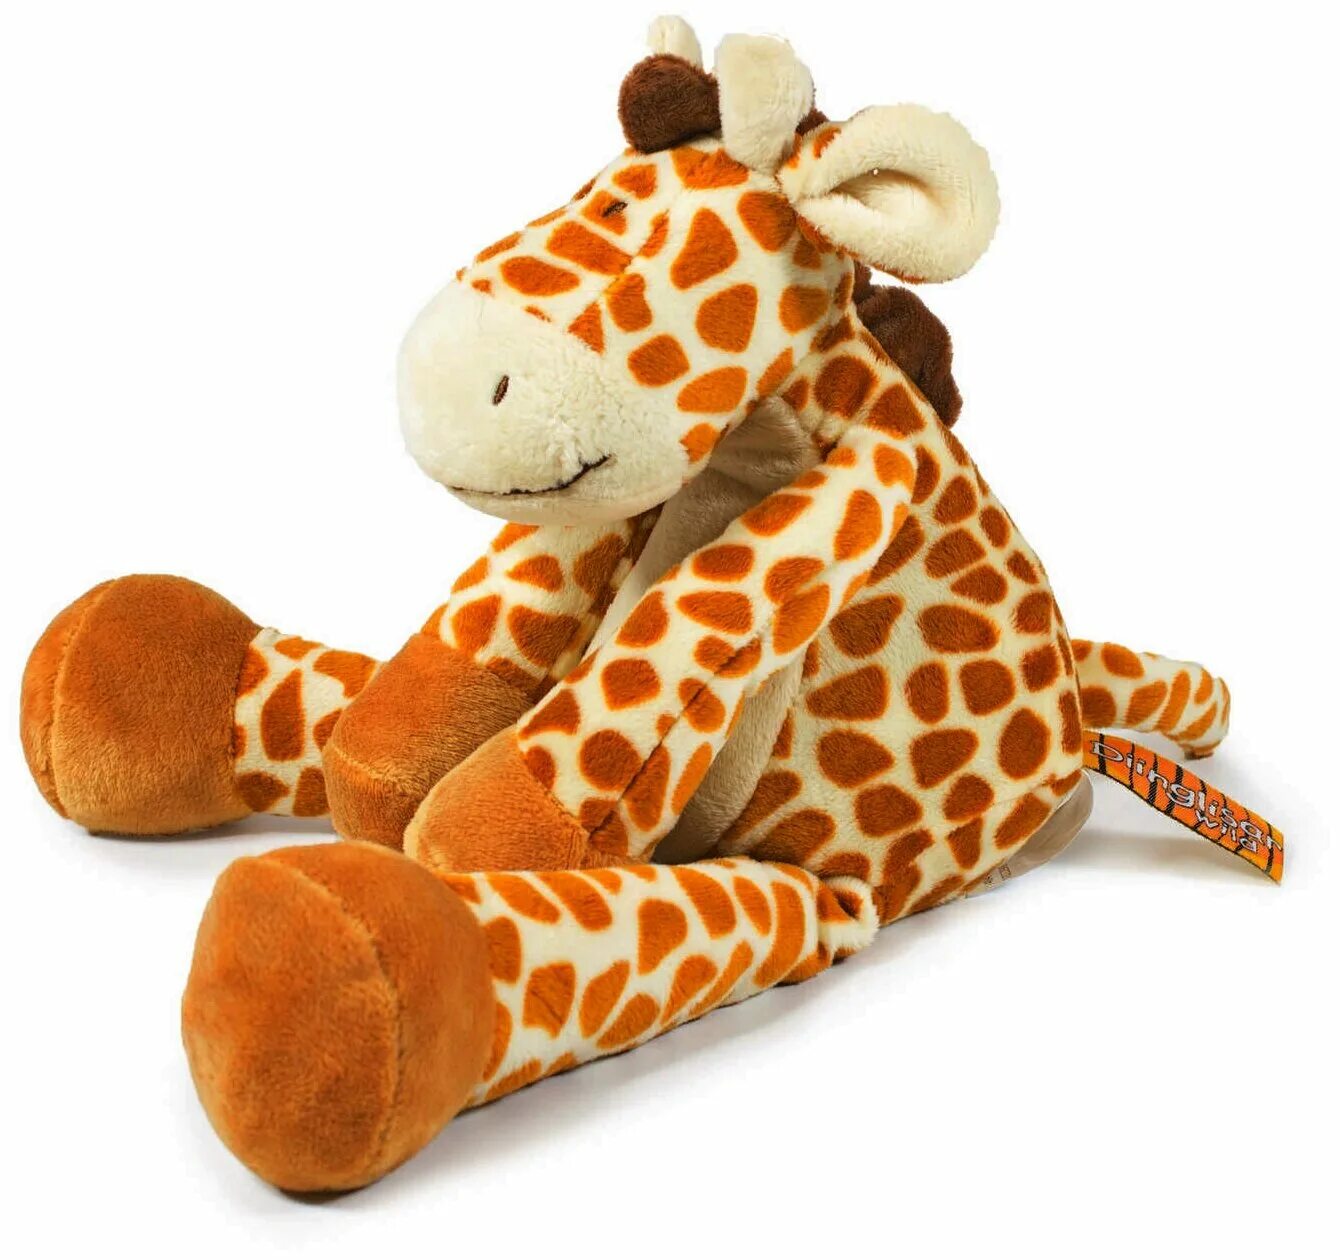 Мягкая игрушка Жираф 3073. Мягкая игрушка WWF Жираф 18 см. Игрушки poosac Жираф. Мягкая игрушка Teddykompaniet Жираф, 31 см. Купить жирафа игрушку